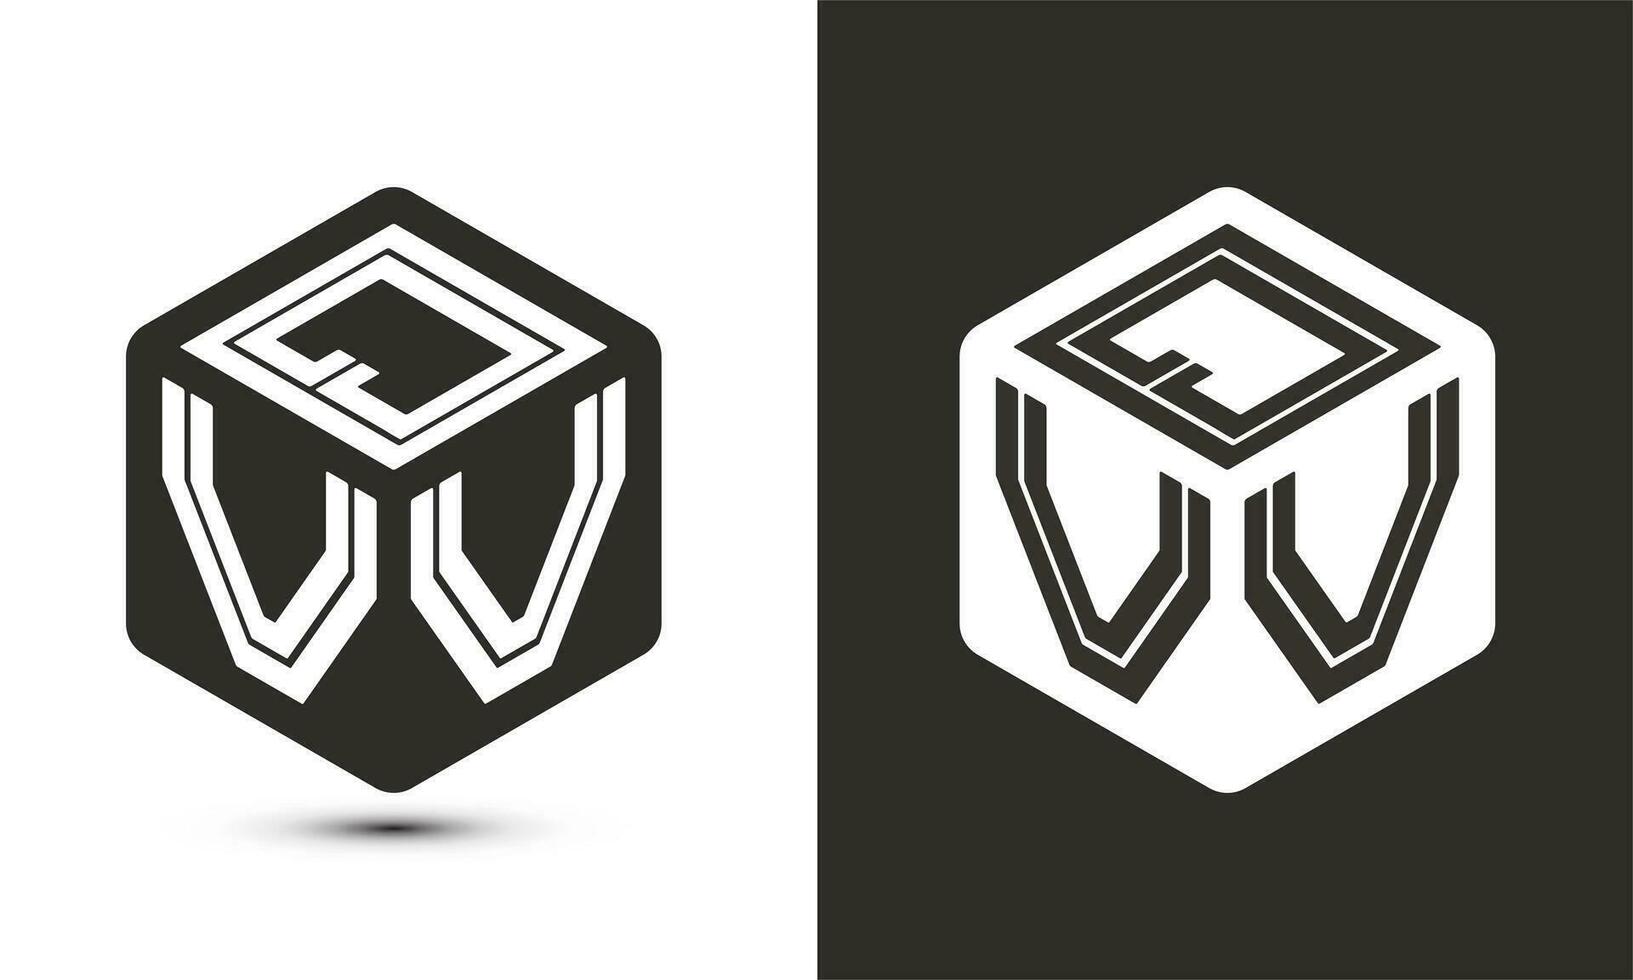 qvv brief logo ontwerp met illustrator kubus logo, vector logo modern alfabet doopvont overlappen stijl.